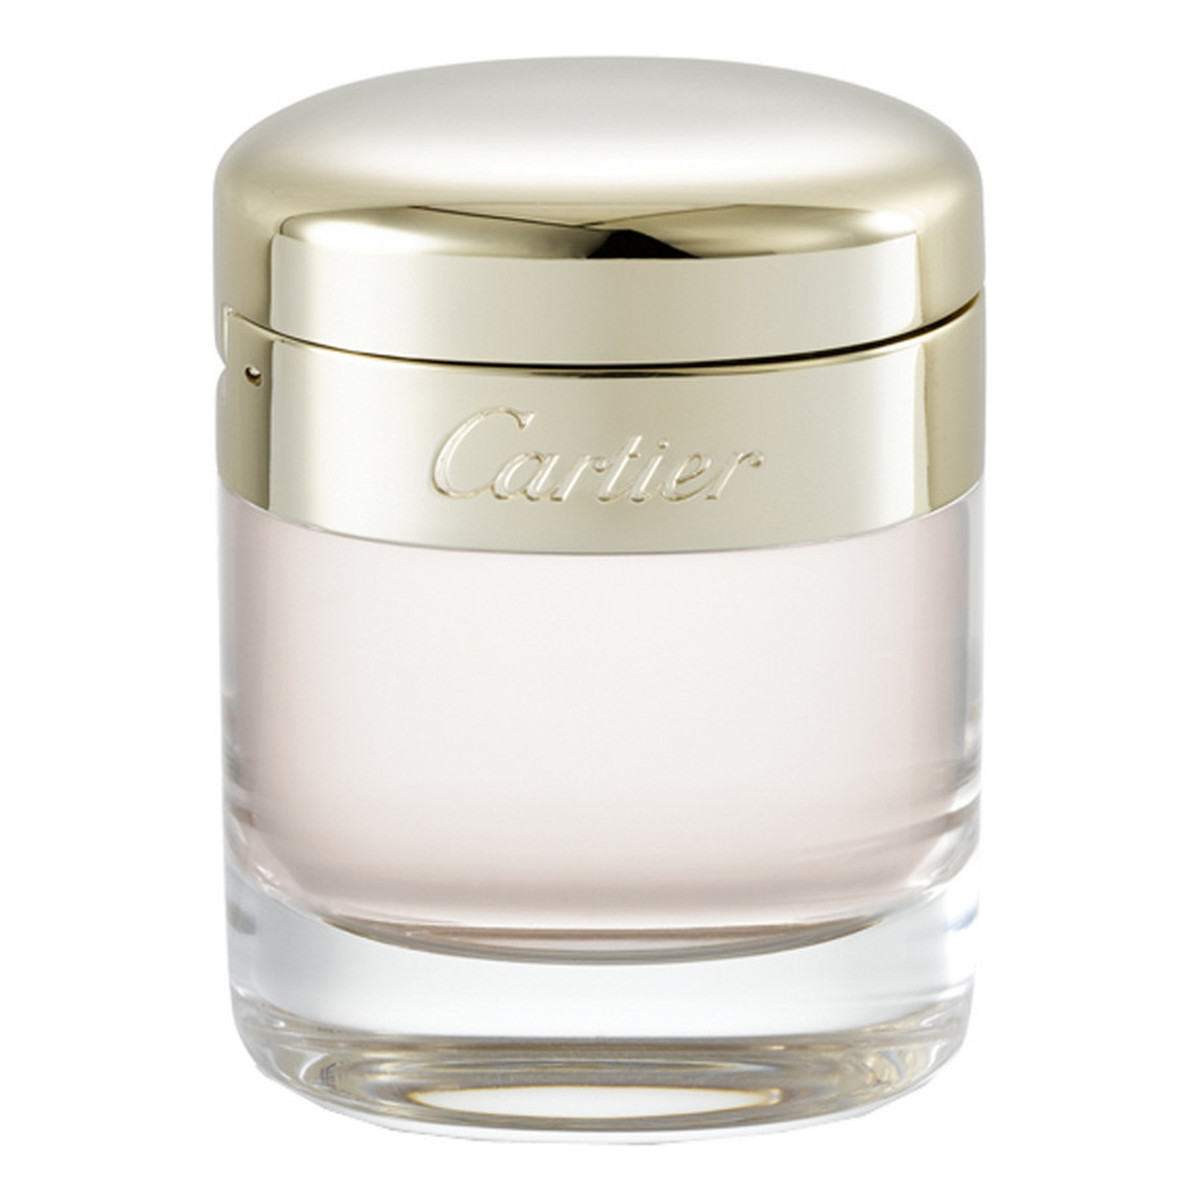 Cartier Baiser Vole woda perfumowana dla kobiet 30ml